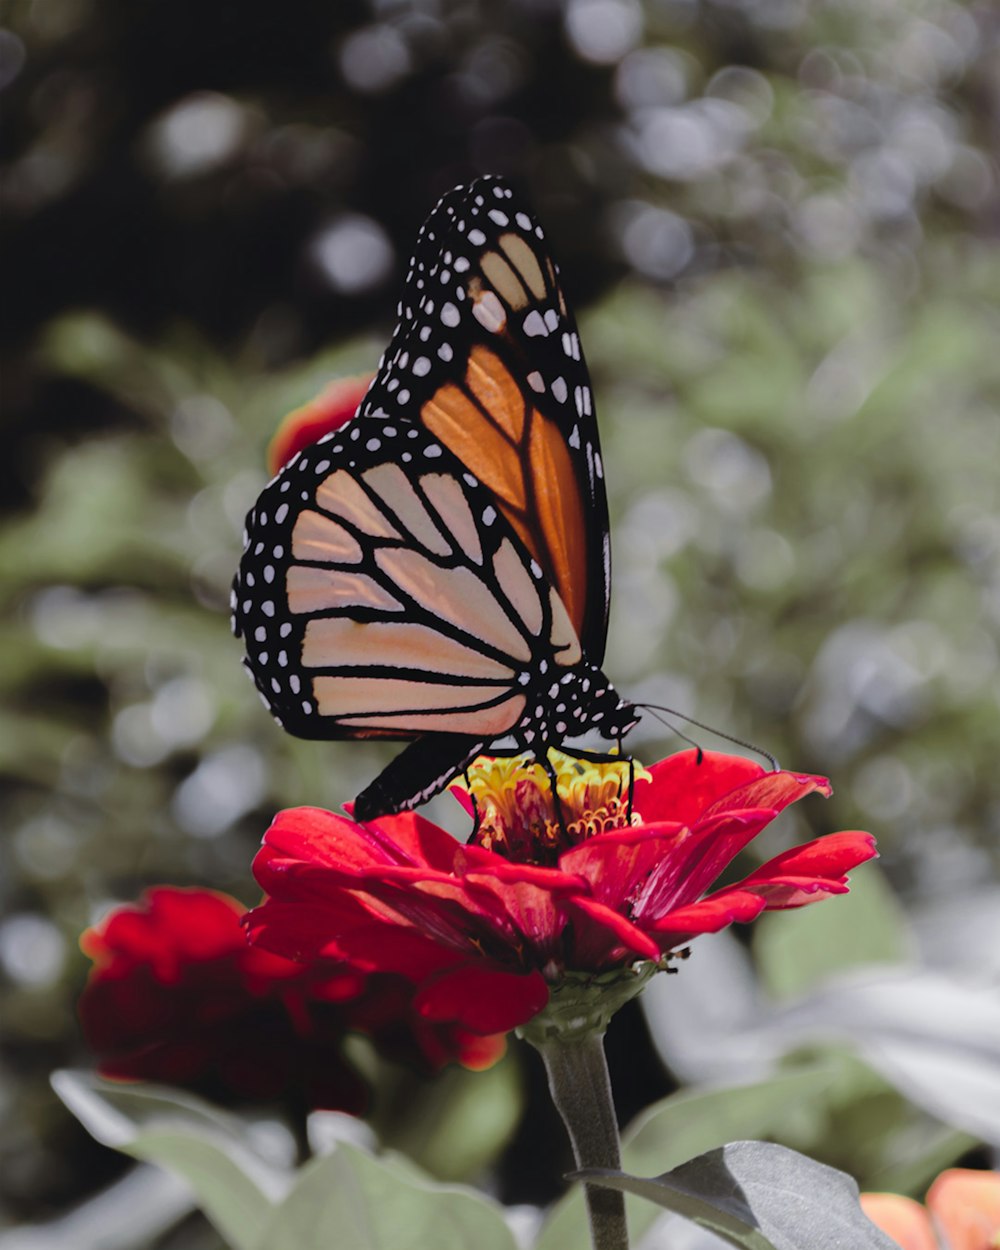 Mariposa monarca posada en flor roja en fotografía de primer plano durante el día